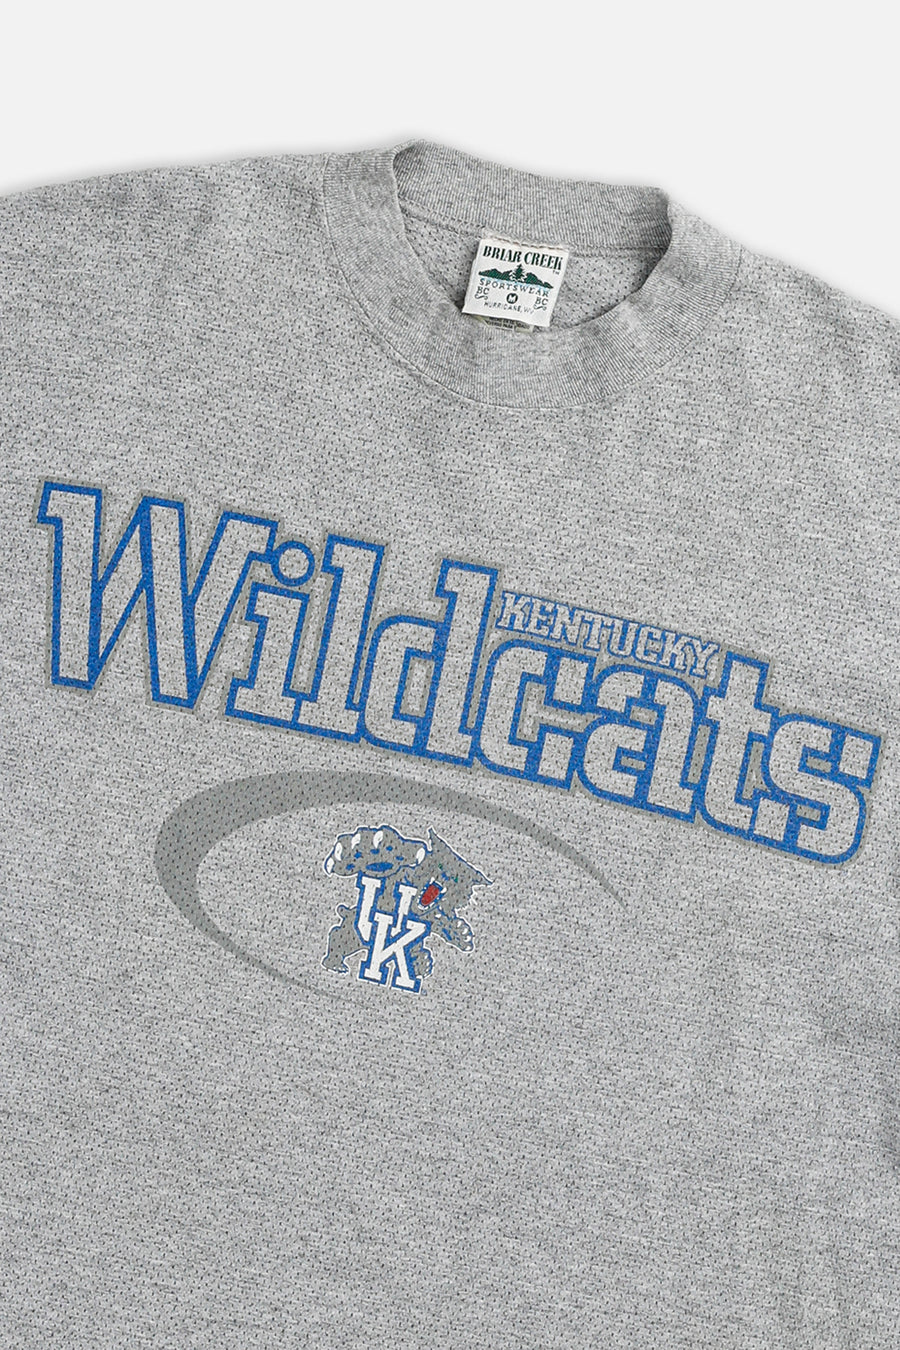 Vintage Kentucky Wildcats Tee - M